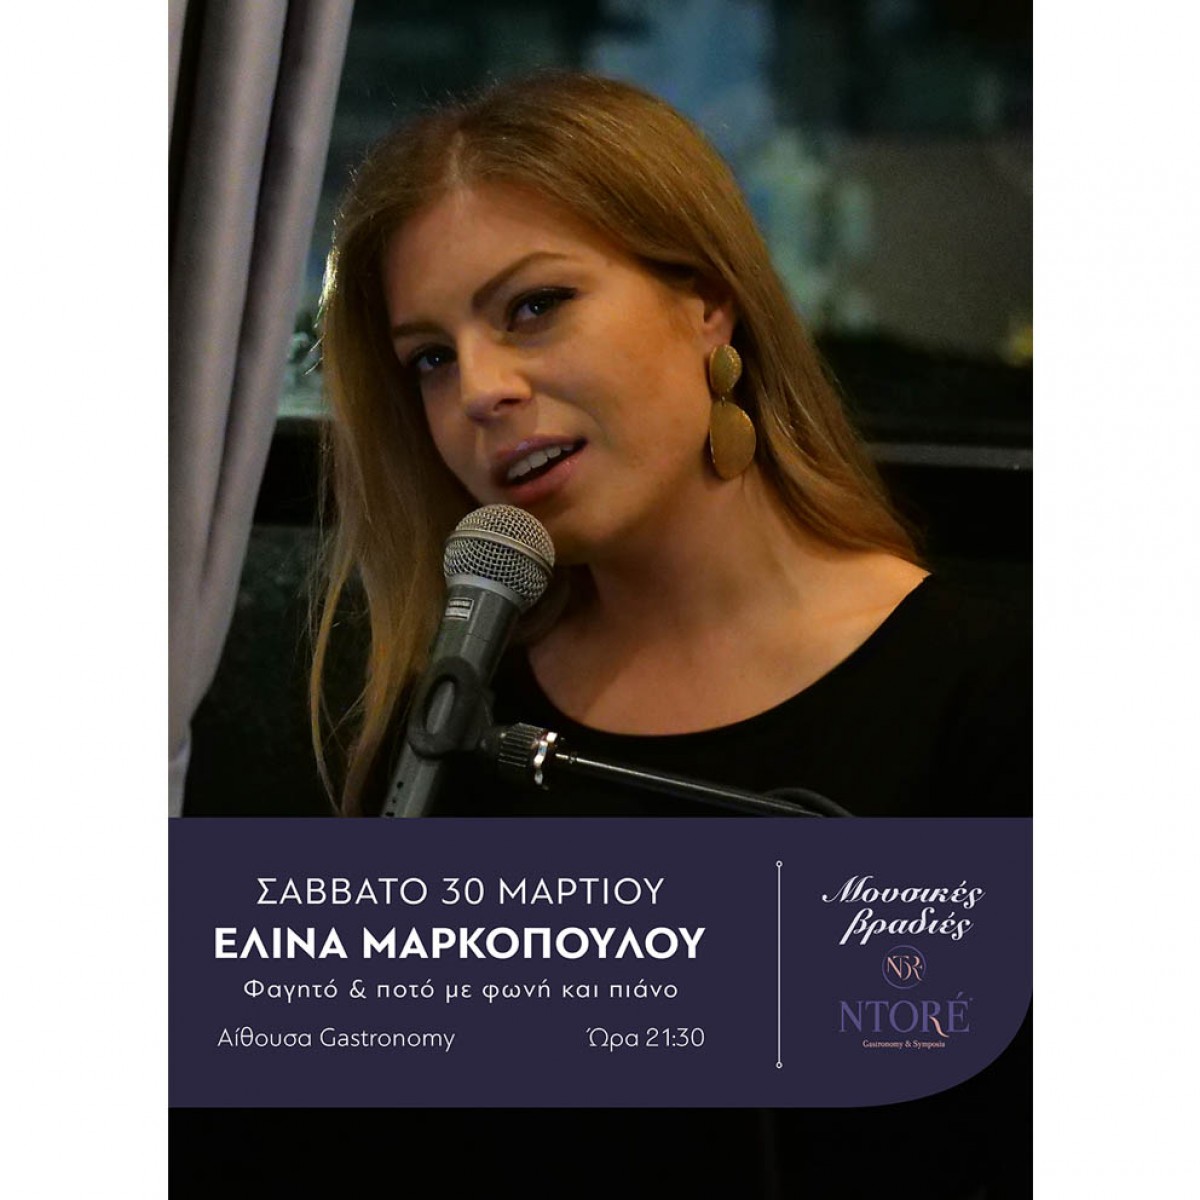 Φαγητό και ποτό με την Ελίνα Μαρκοπούλου στη φωνή και το πιάνο και την καλύτερη θέα της πόλης! Σάββατο 30 Μαρτίου, 21:30